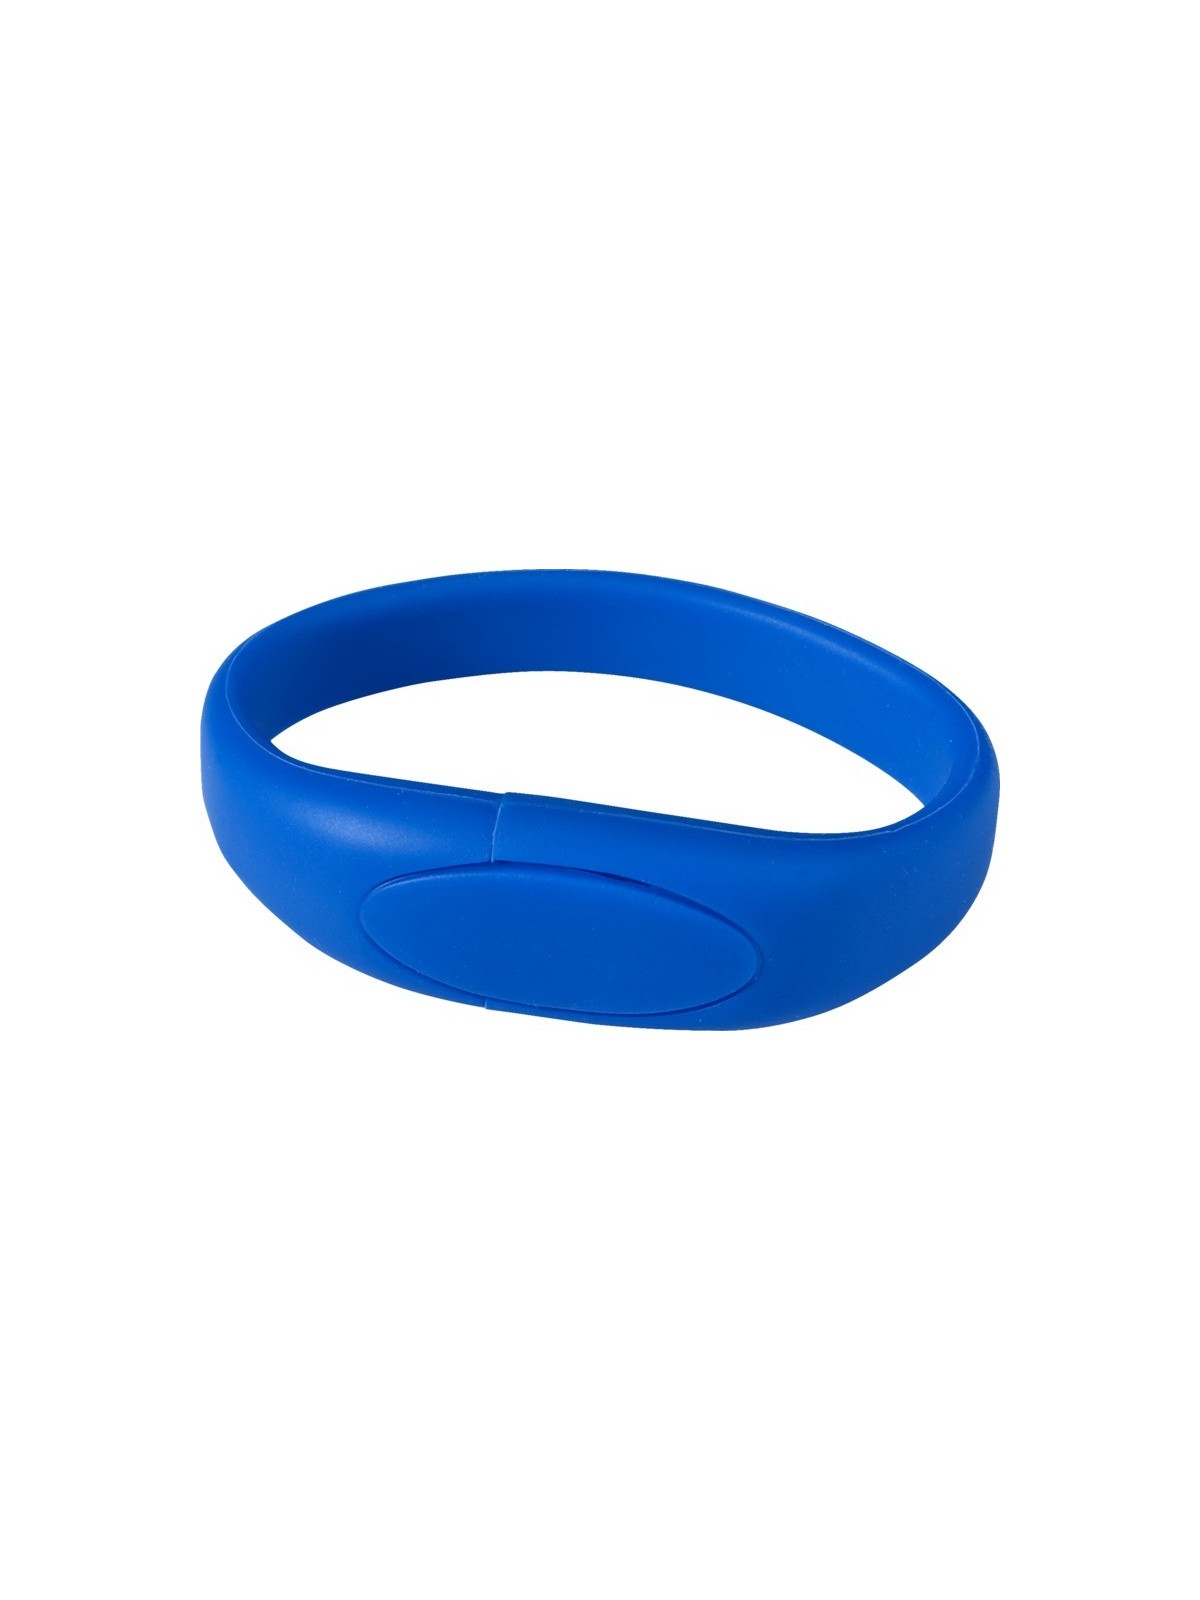 29-282 Clé USB bracelet personnalisable en silicone personnalisé